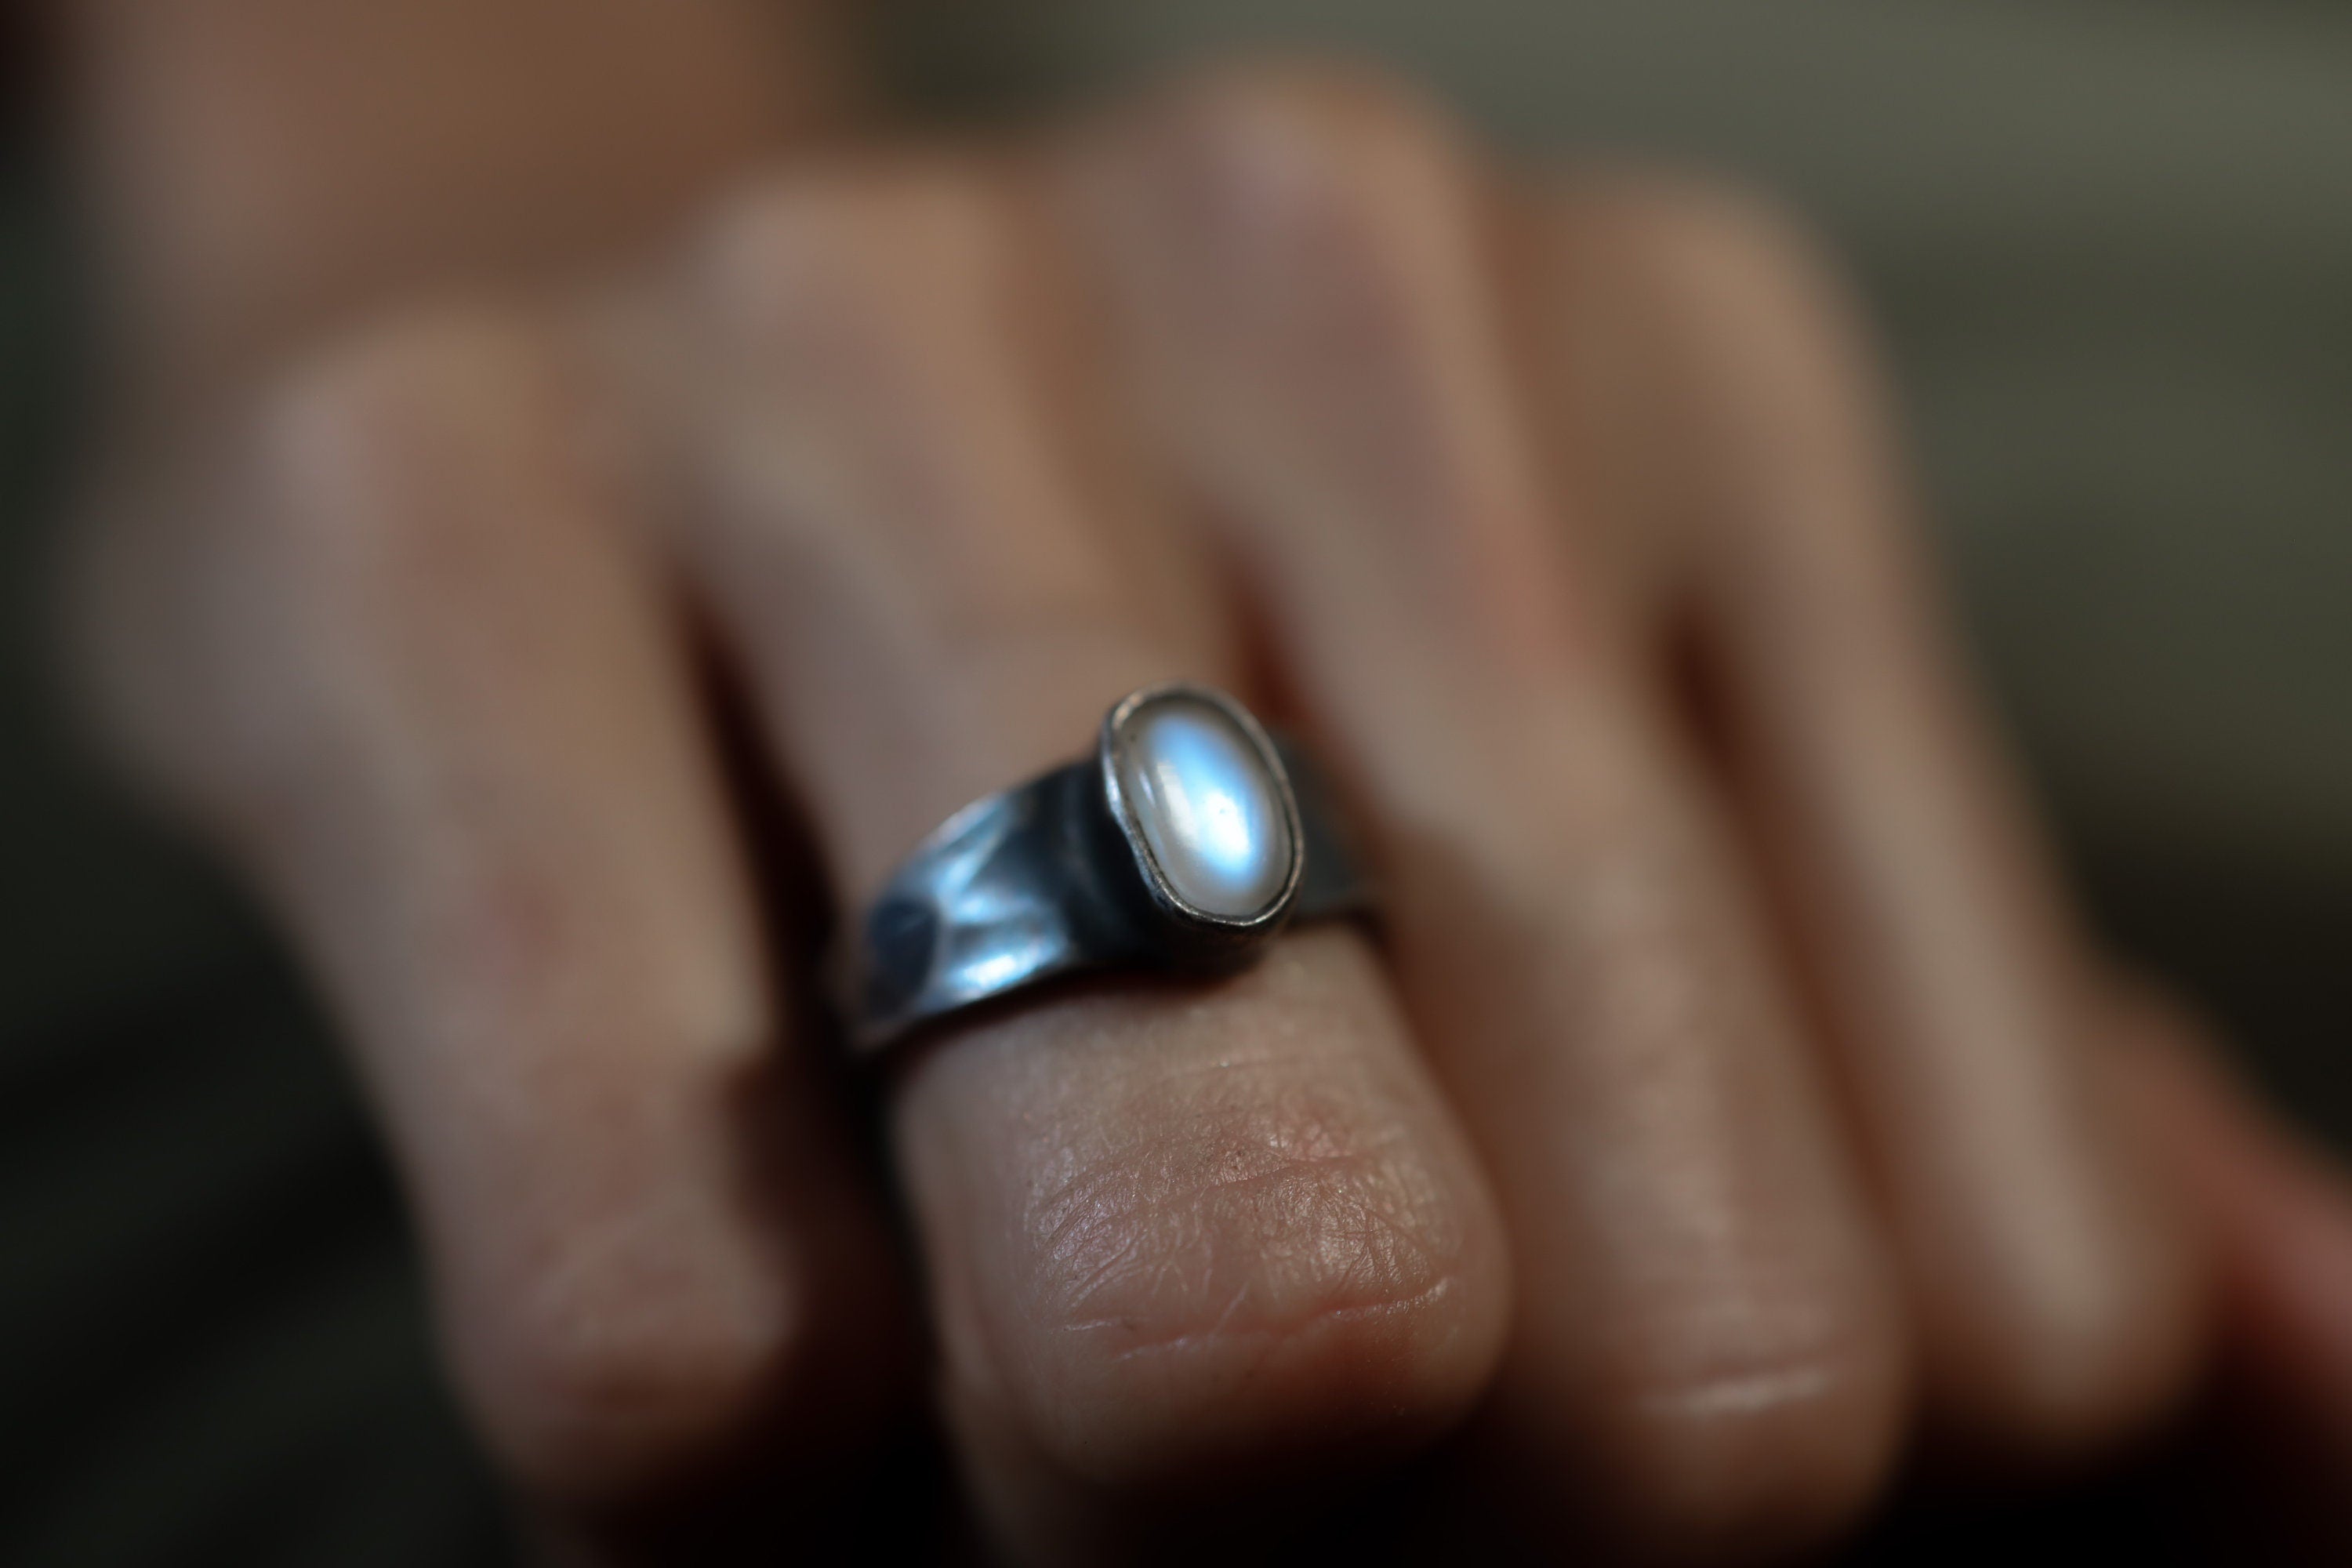 Celestial Elegance - High-Grade Cat's Eye Moonstone - Unisex/Men - Size 5.5 US - Large Sterling Silver Ring